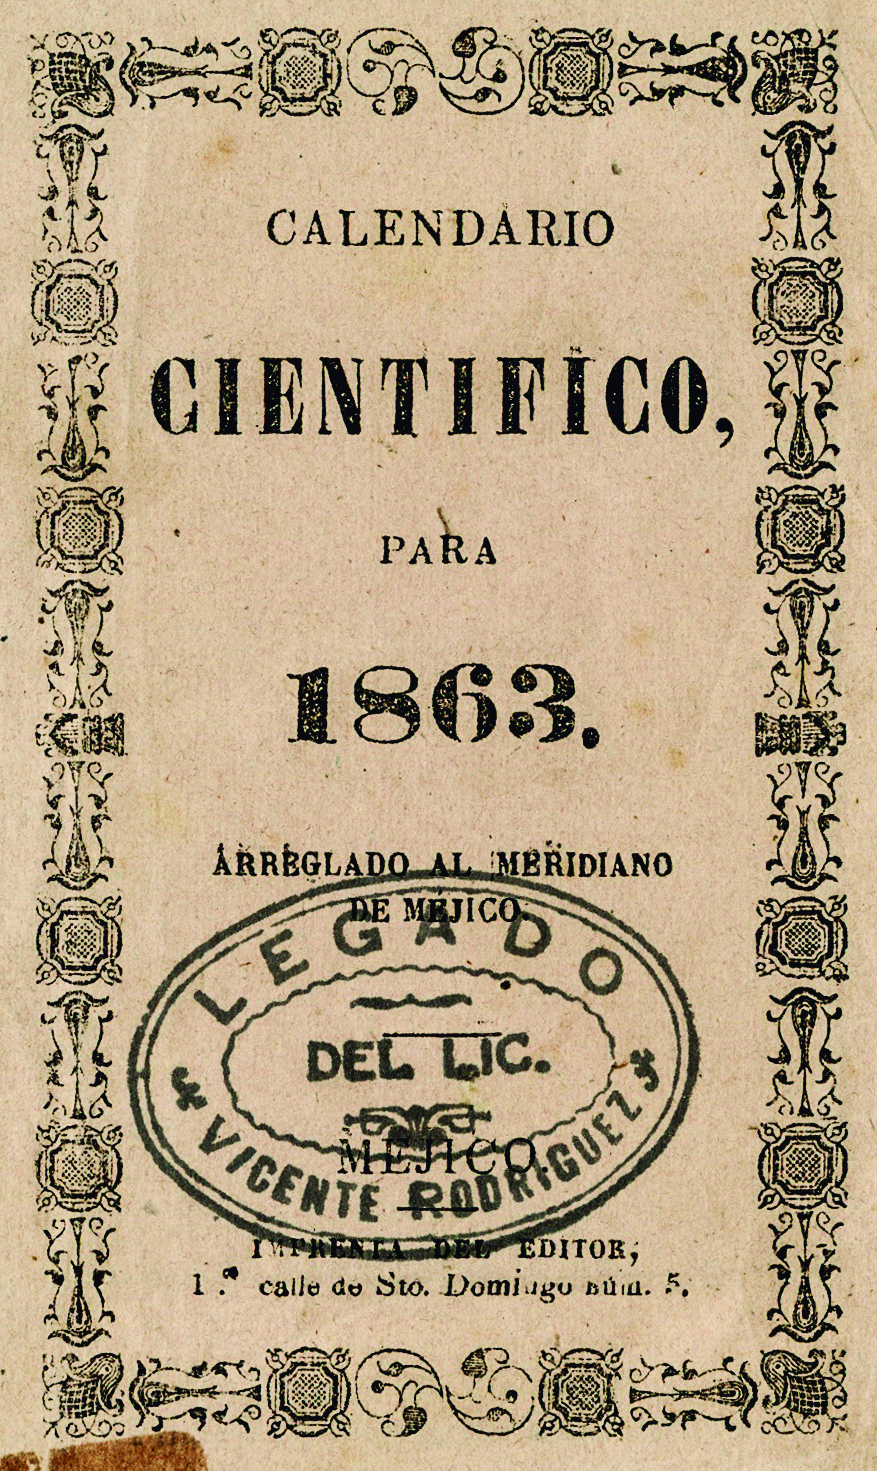 Calendario Científico para 1863. Arreglado al meridiano de Méjico.